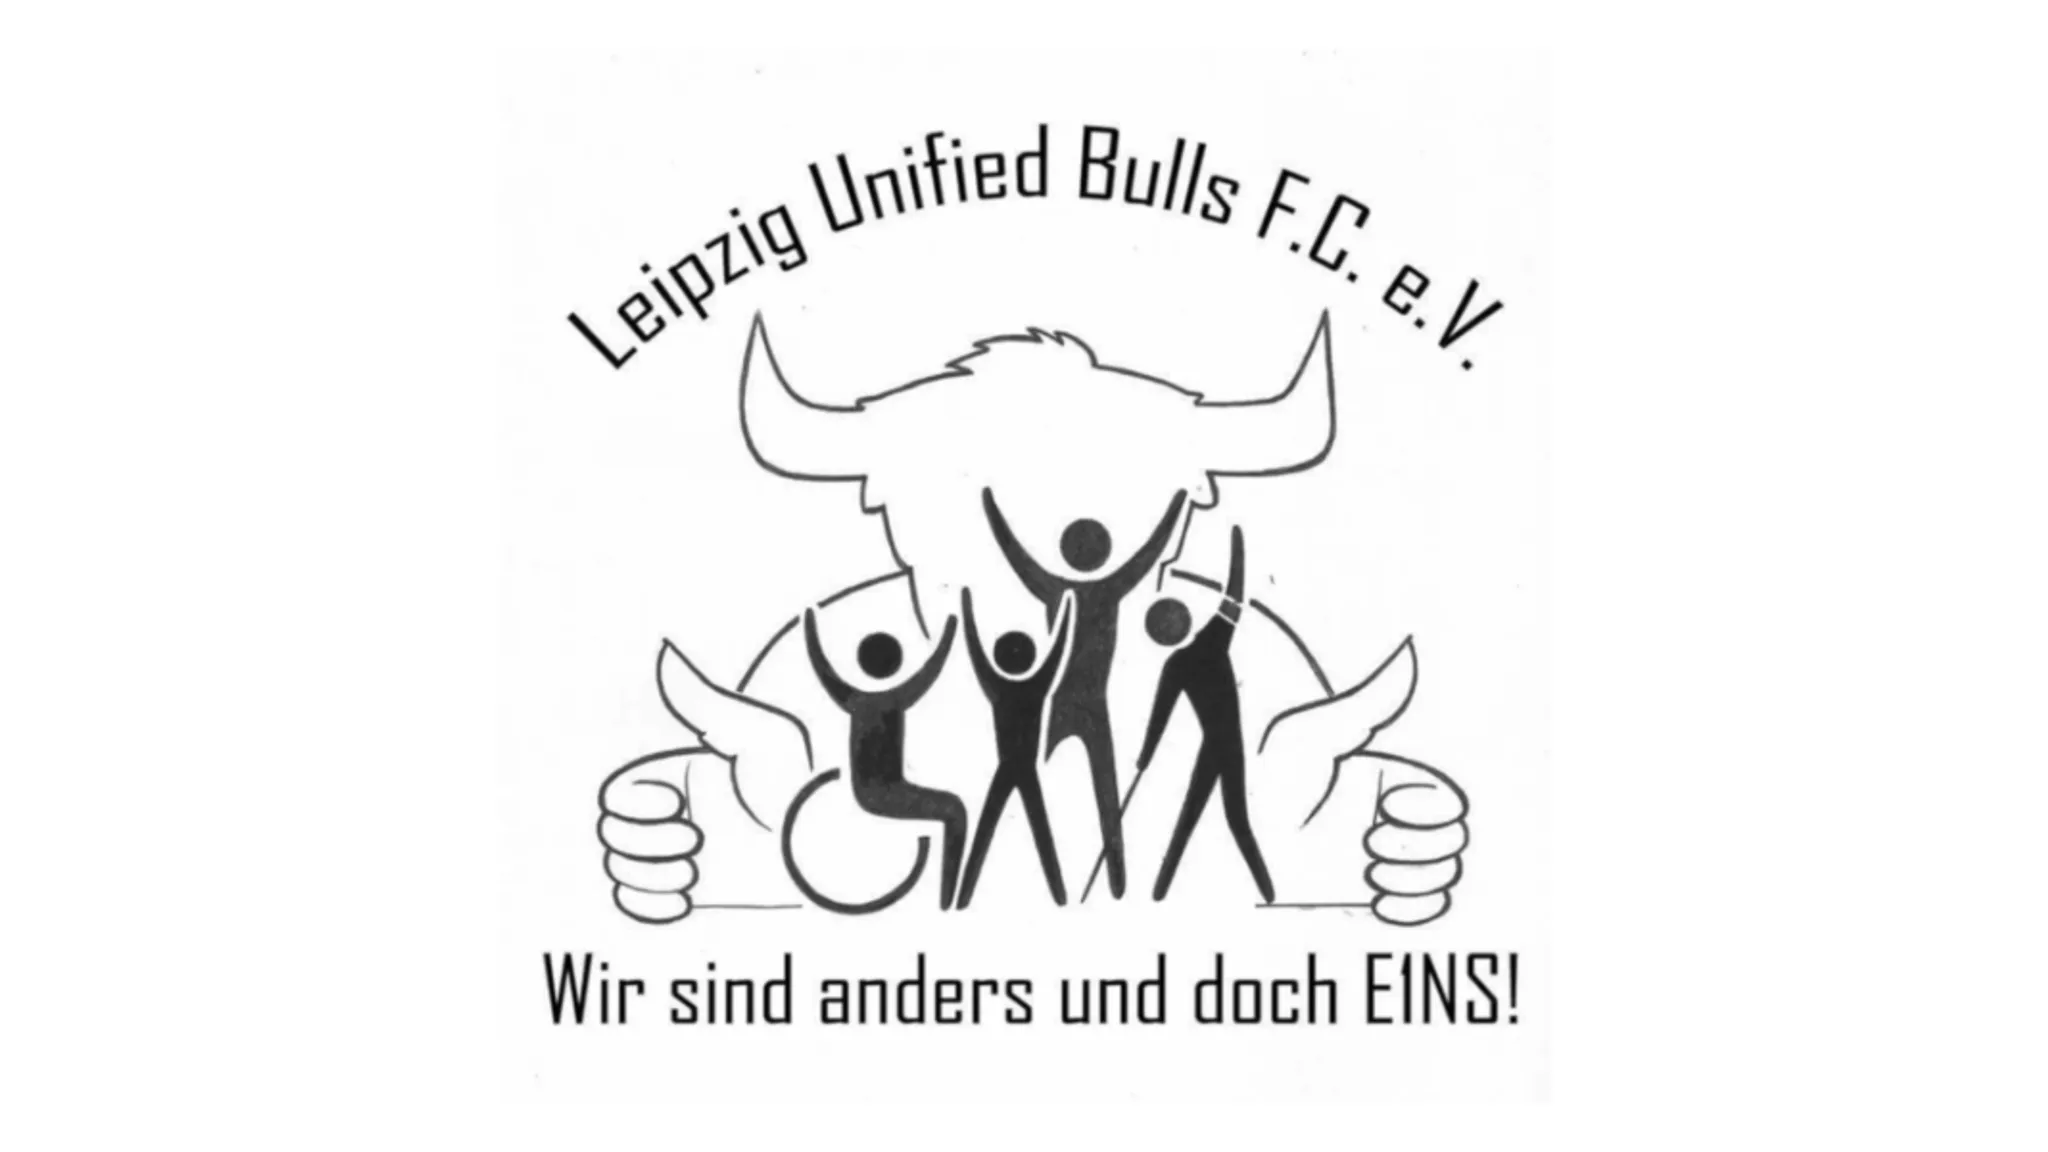 Unified Bulls, OFC seit 17. Oktober 2018